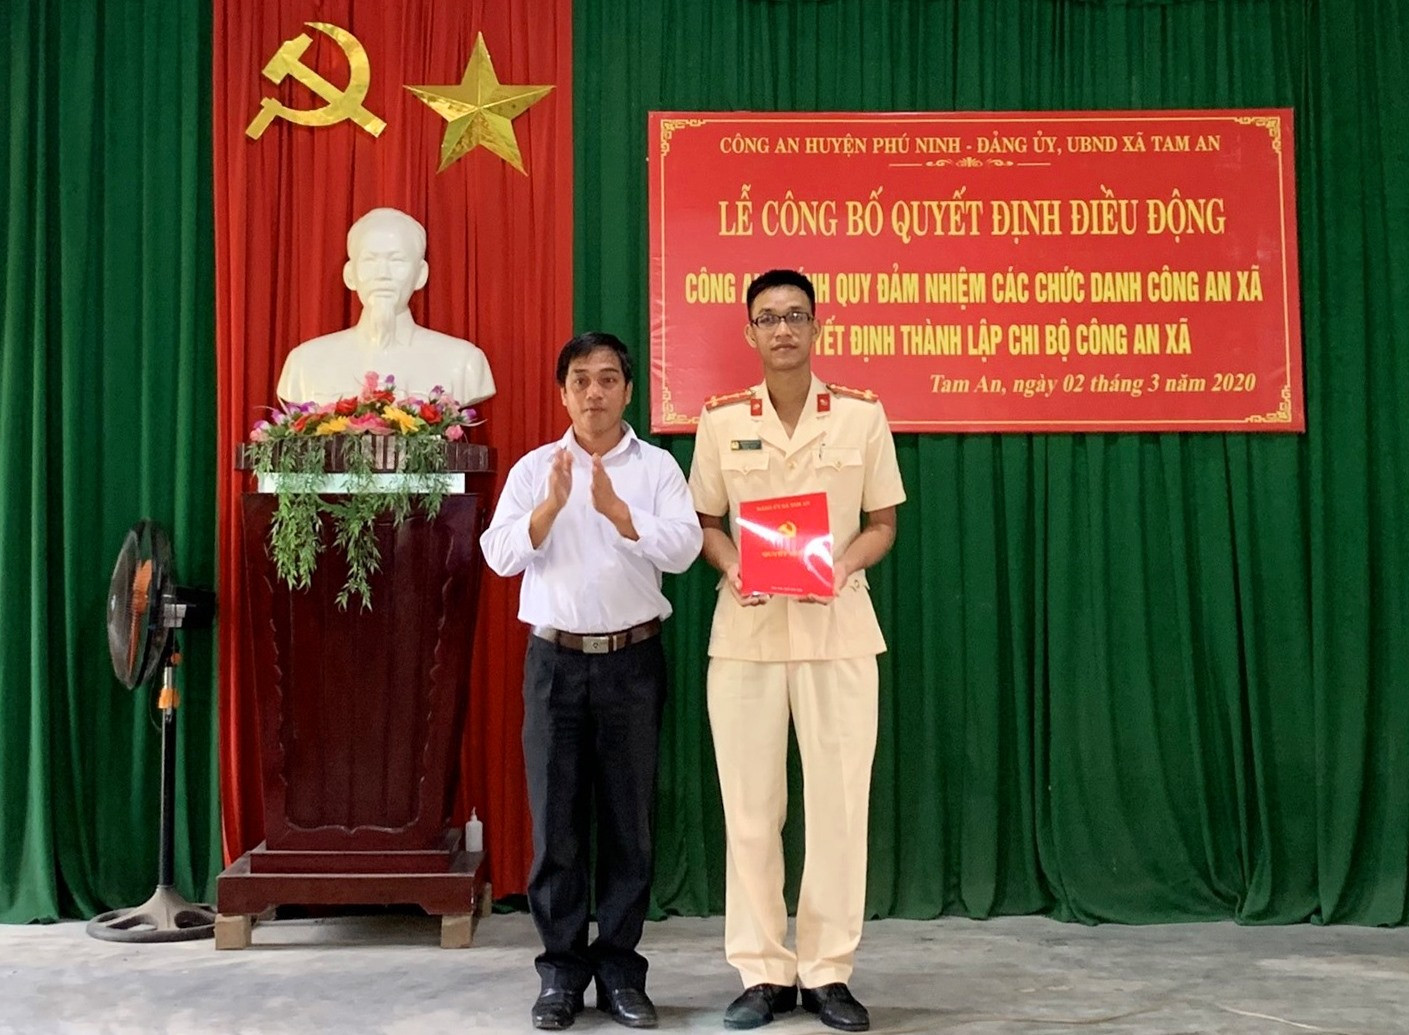 Đảng ủy xã Tam An trao quyết định thành lập Chi bộ Công an xã. Ảnh: PHAN VINH